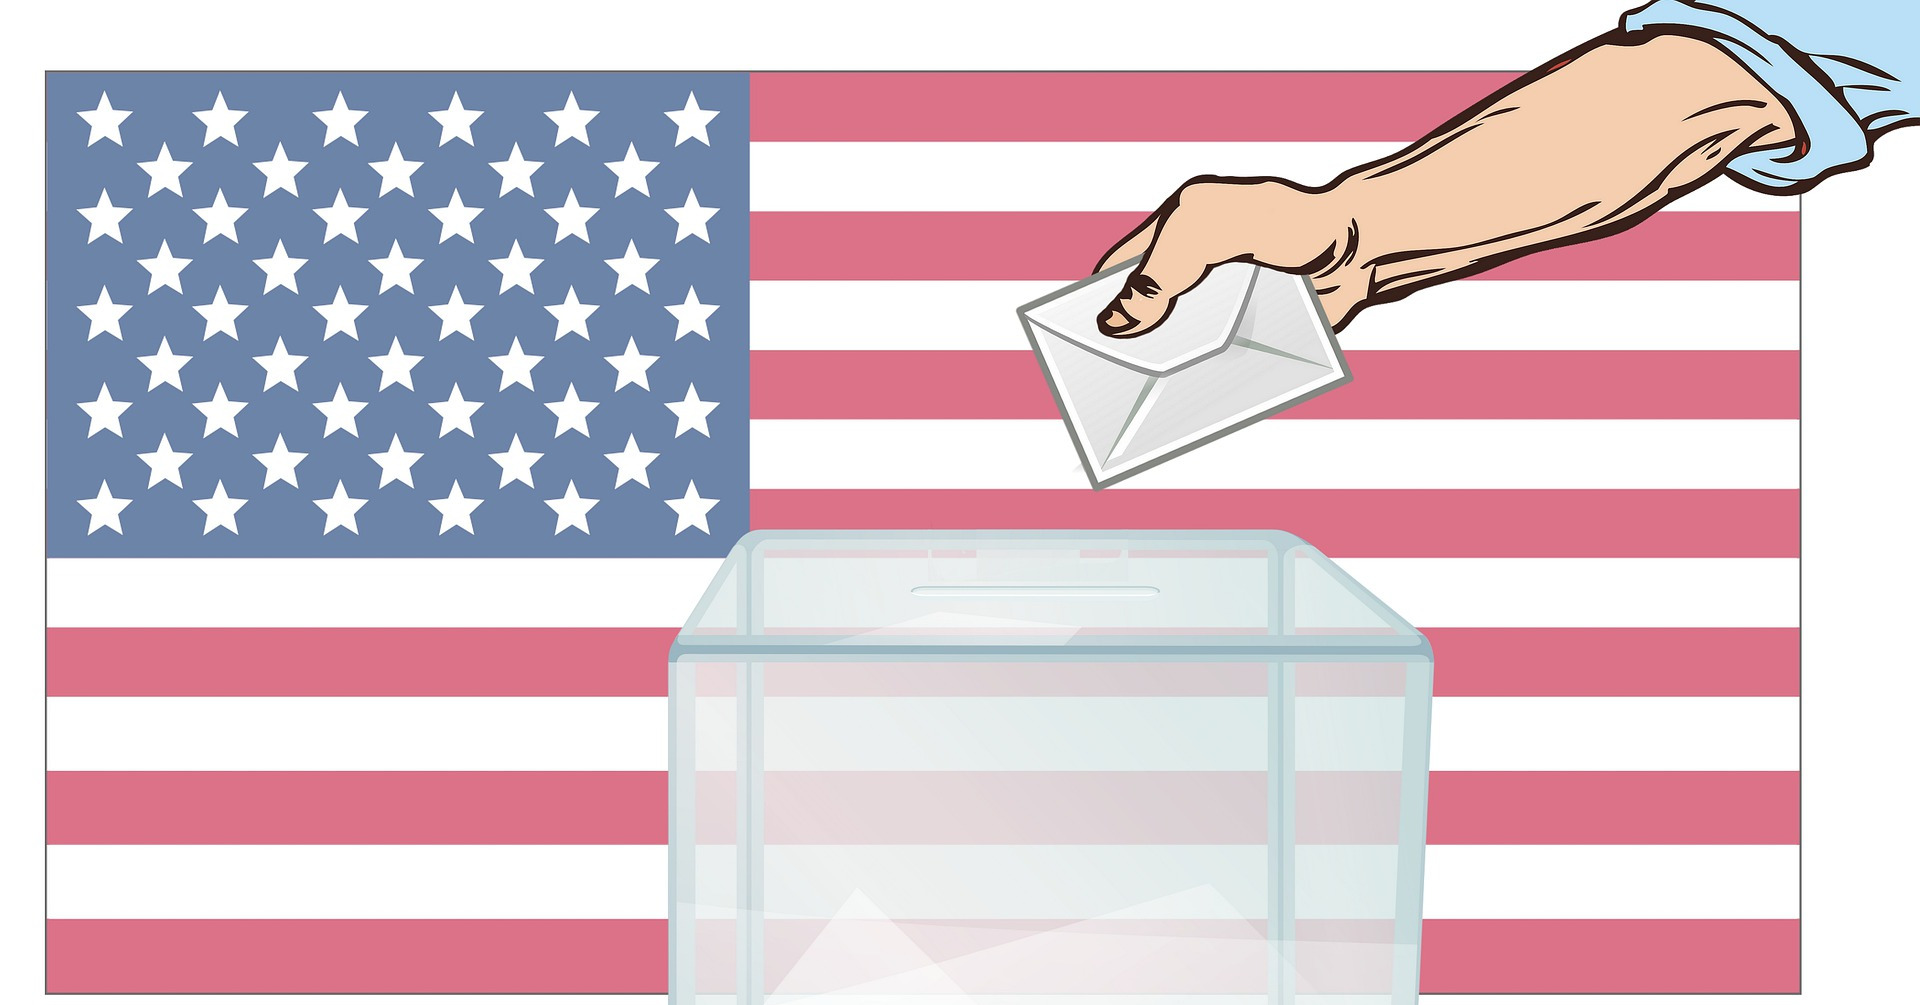 Voting at a ballot box